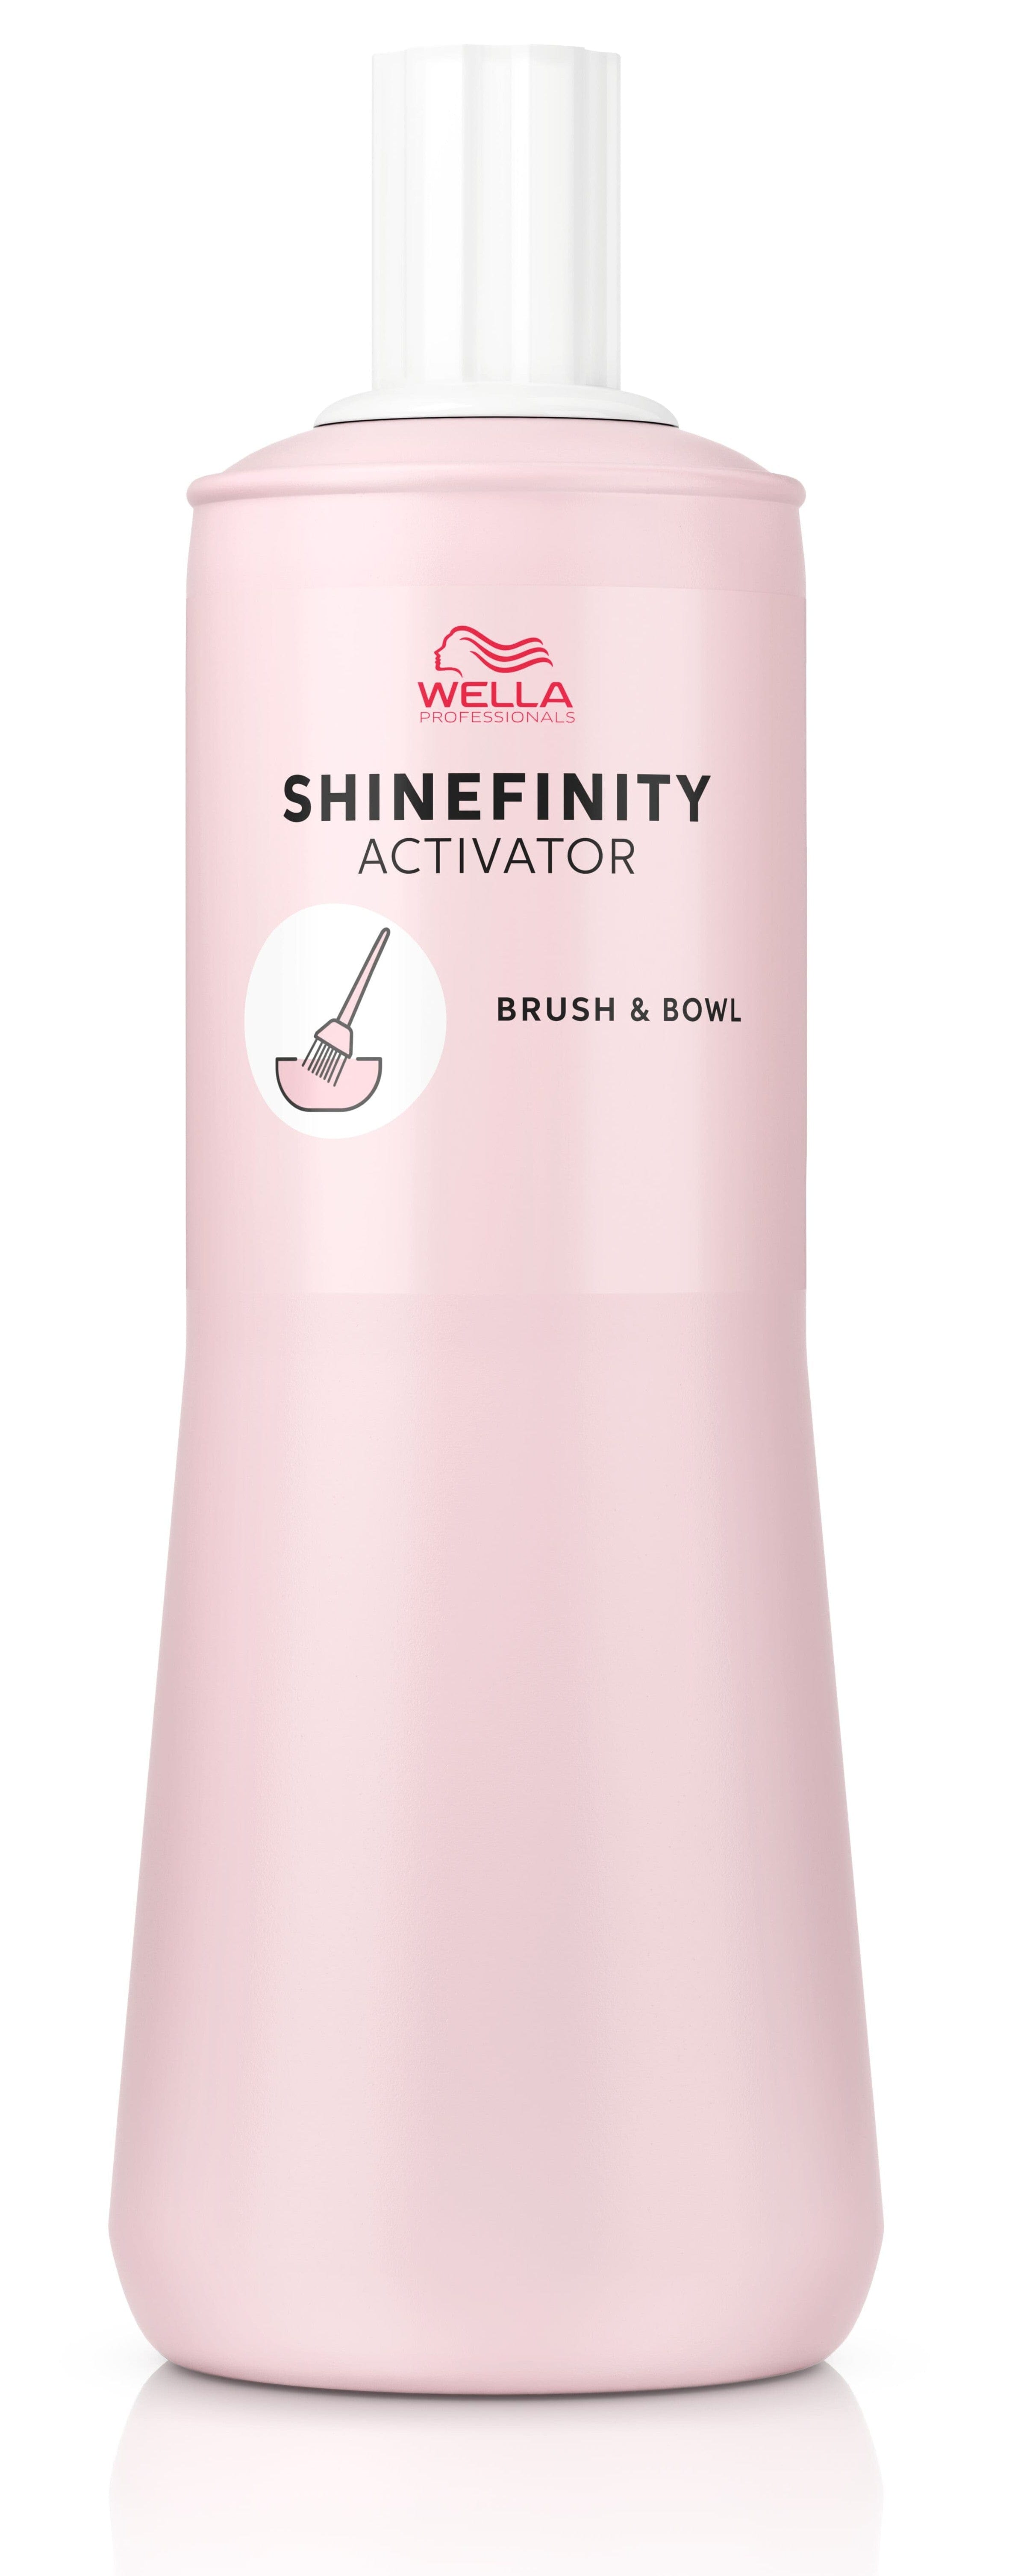 Wella Tinte Shinefinity Wella Activador 2% Bol y Paletina-1000ML Roberta Beauty Club Tienda Online Productos de Peluqueria